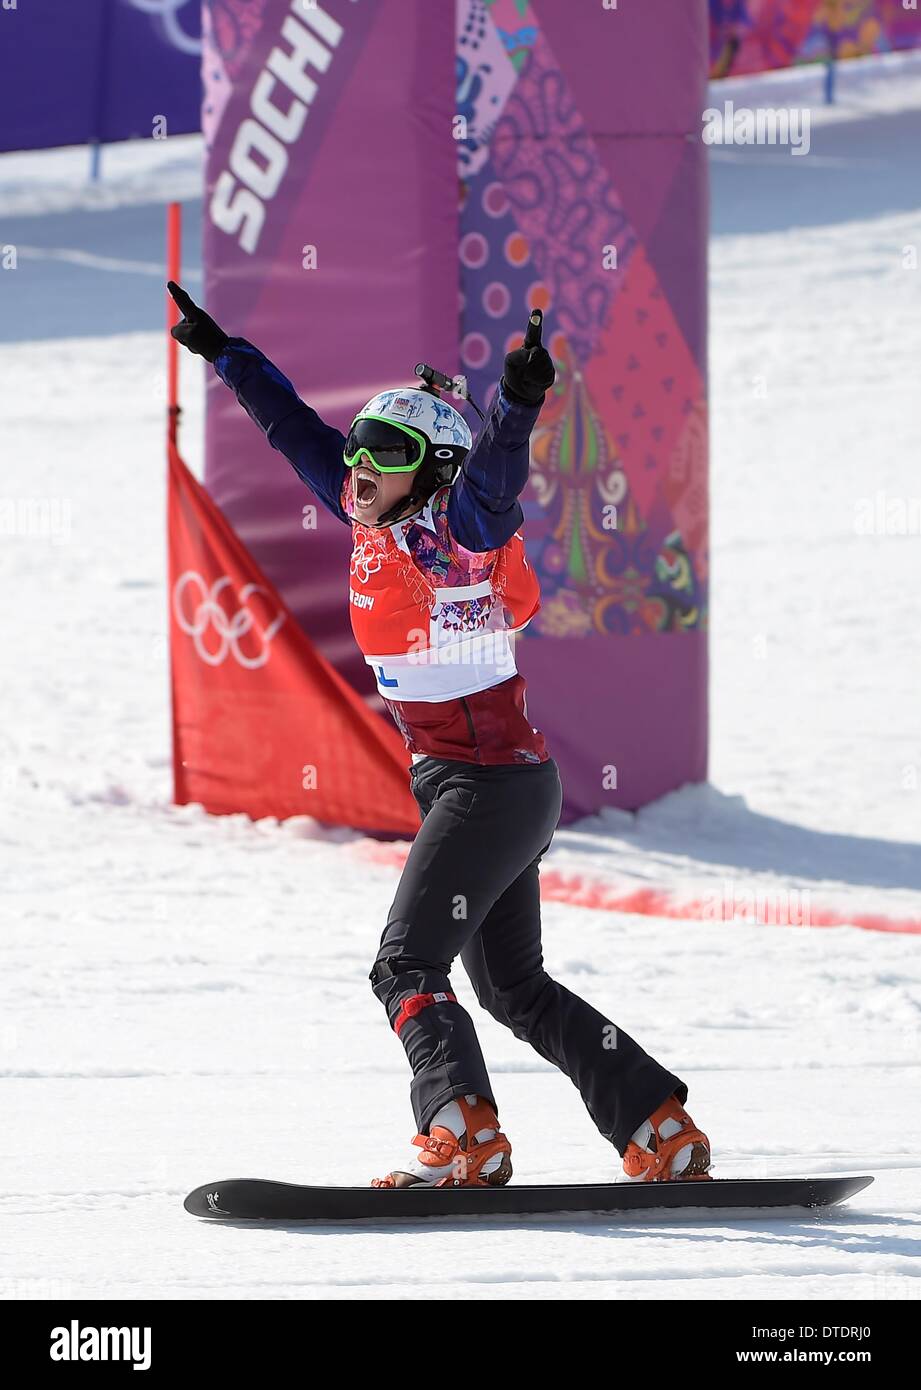 Eva Samkova (CZE) feiert sie überquert die Ziellinie um GOLD zu gewinnen. Womens Snowbboard Cross - Rosa Khutor Extreme Park - Sotschi - Russland - 16.02.2014 Stockfoto